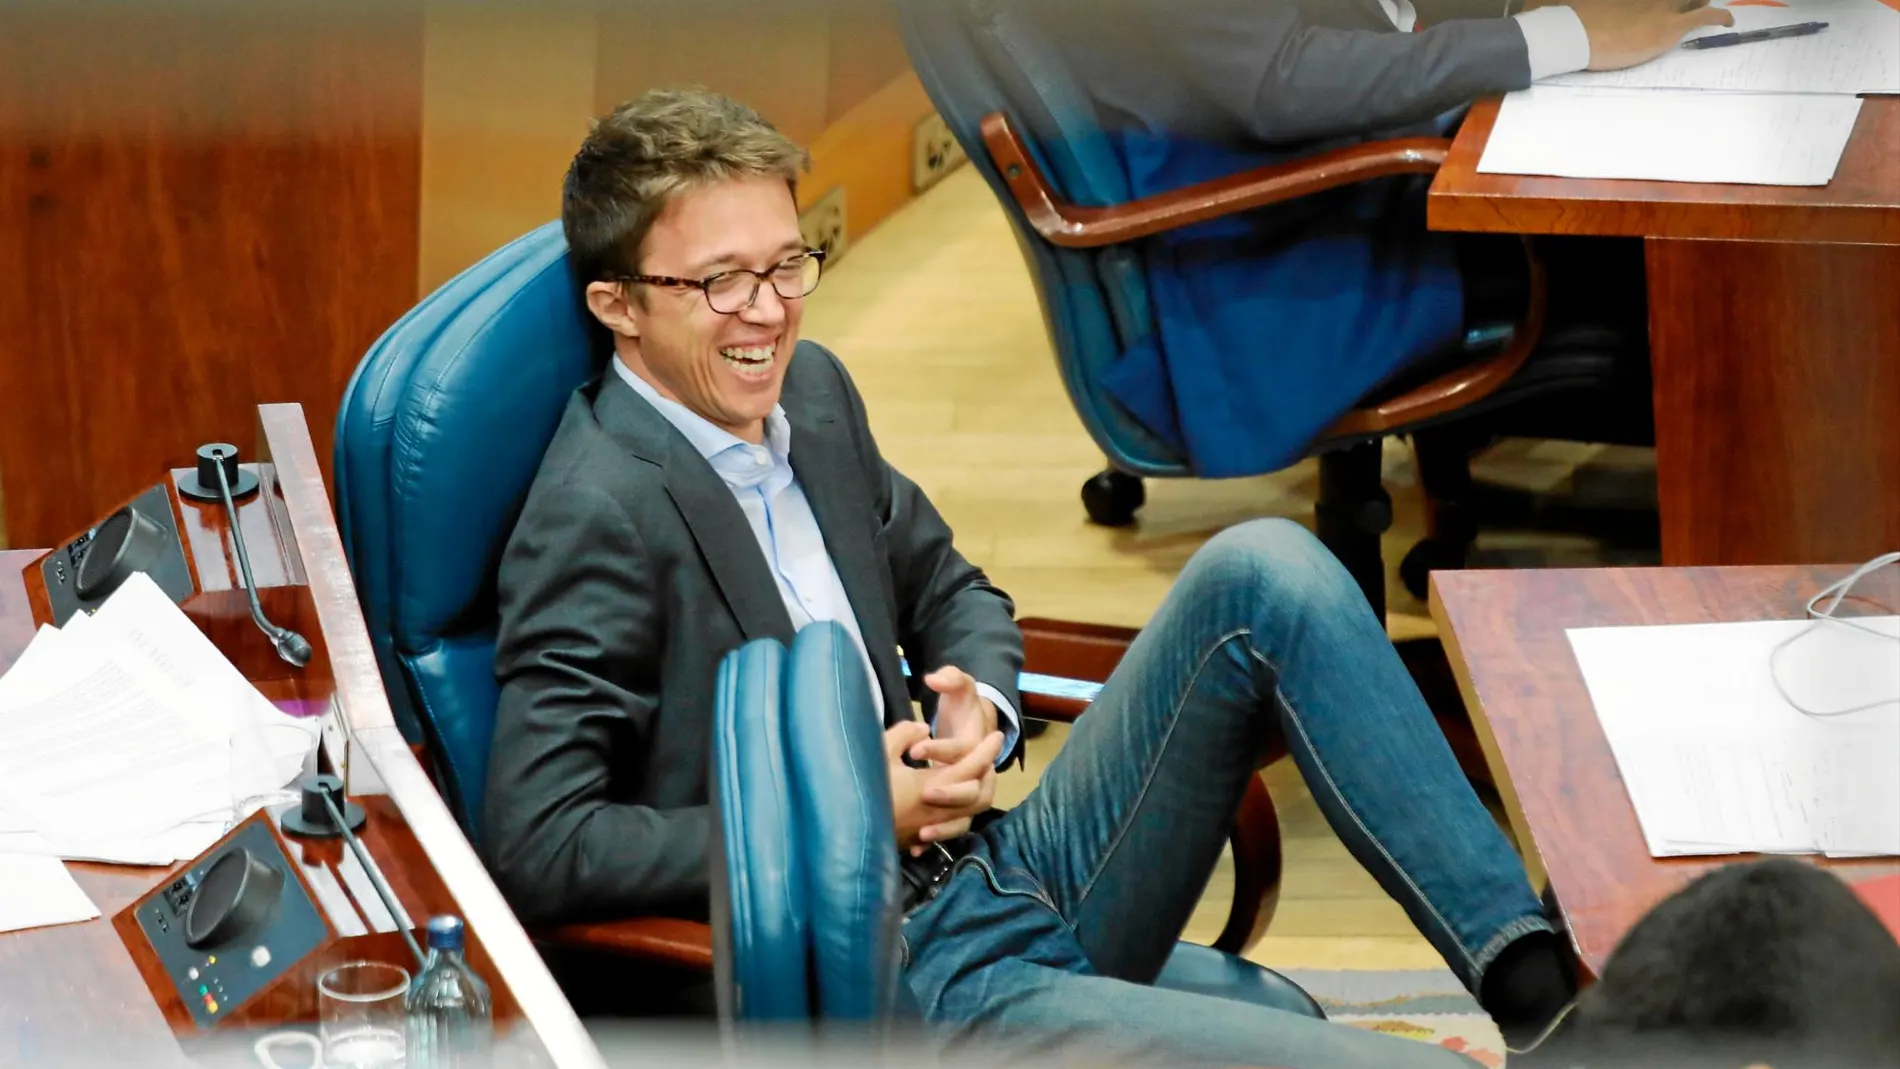 El portavoz de Más Madrid, Íñigo Errejón, cobra 3.503 euros al mes como diputado más un extra de 1.825 euros por ser portavoz del grupo parlamentario. Foto: Rubén Mondelo